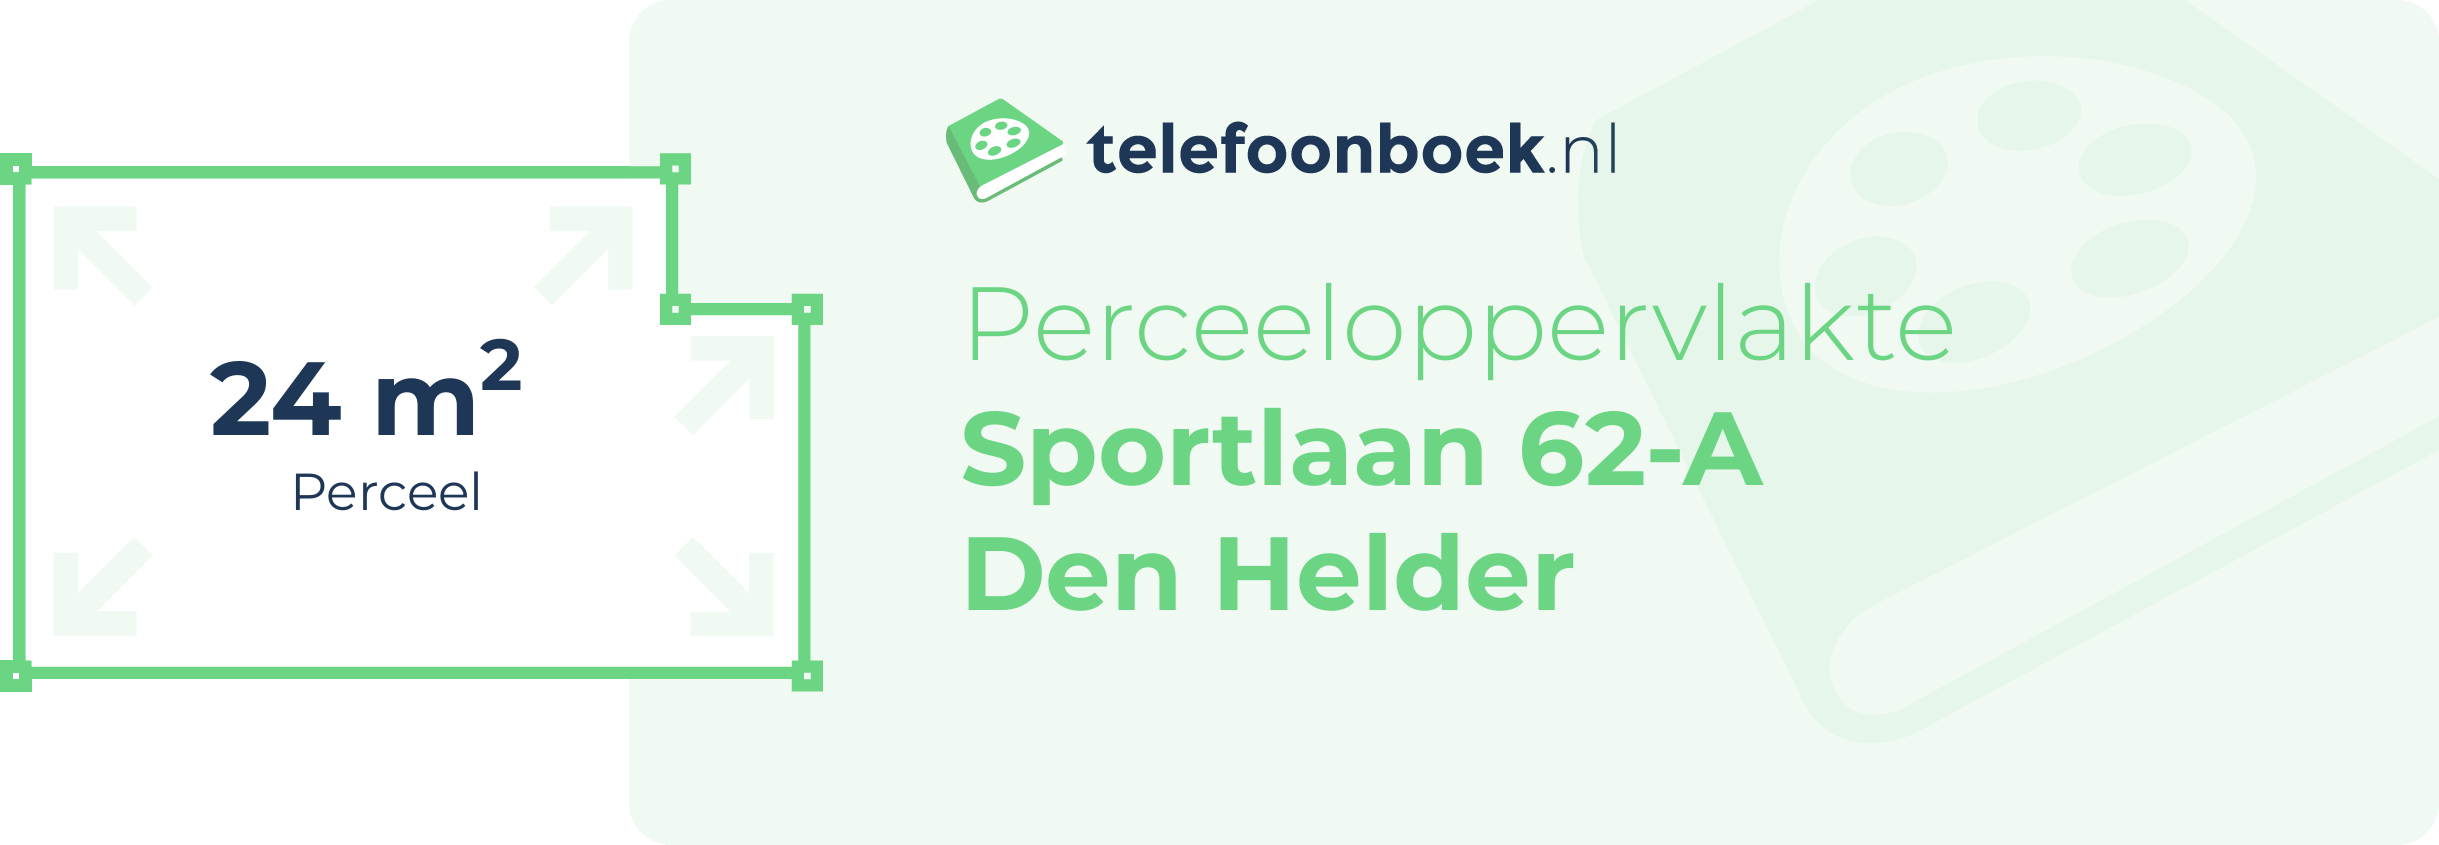 Perceeloppervlakte Sportlaan 62-A Den Helder